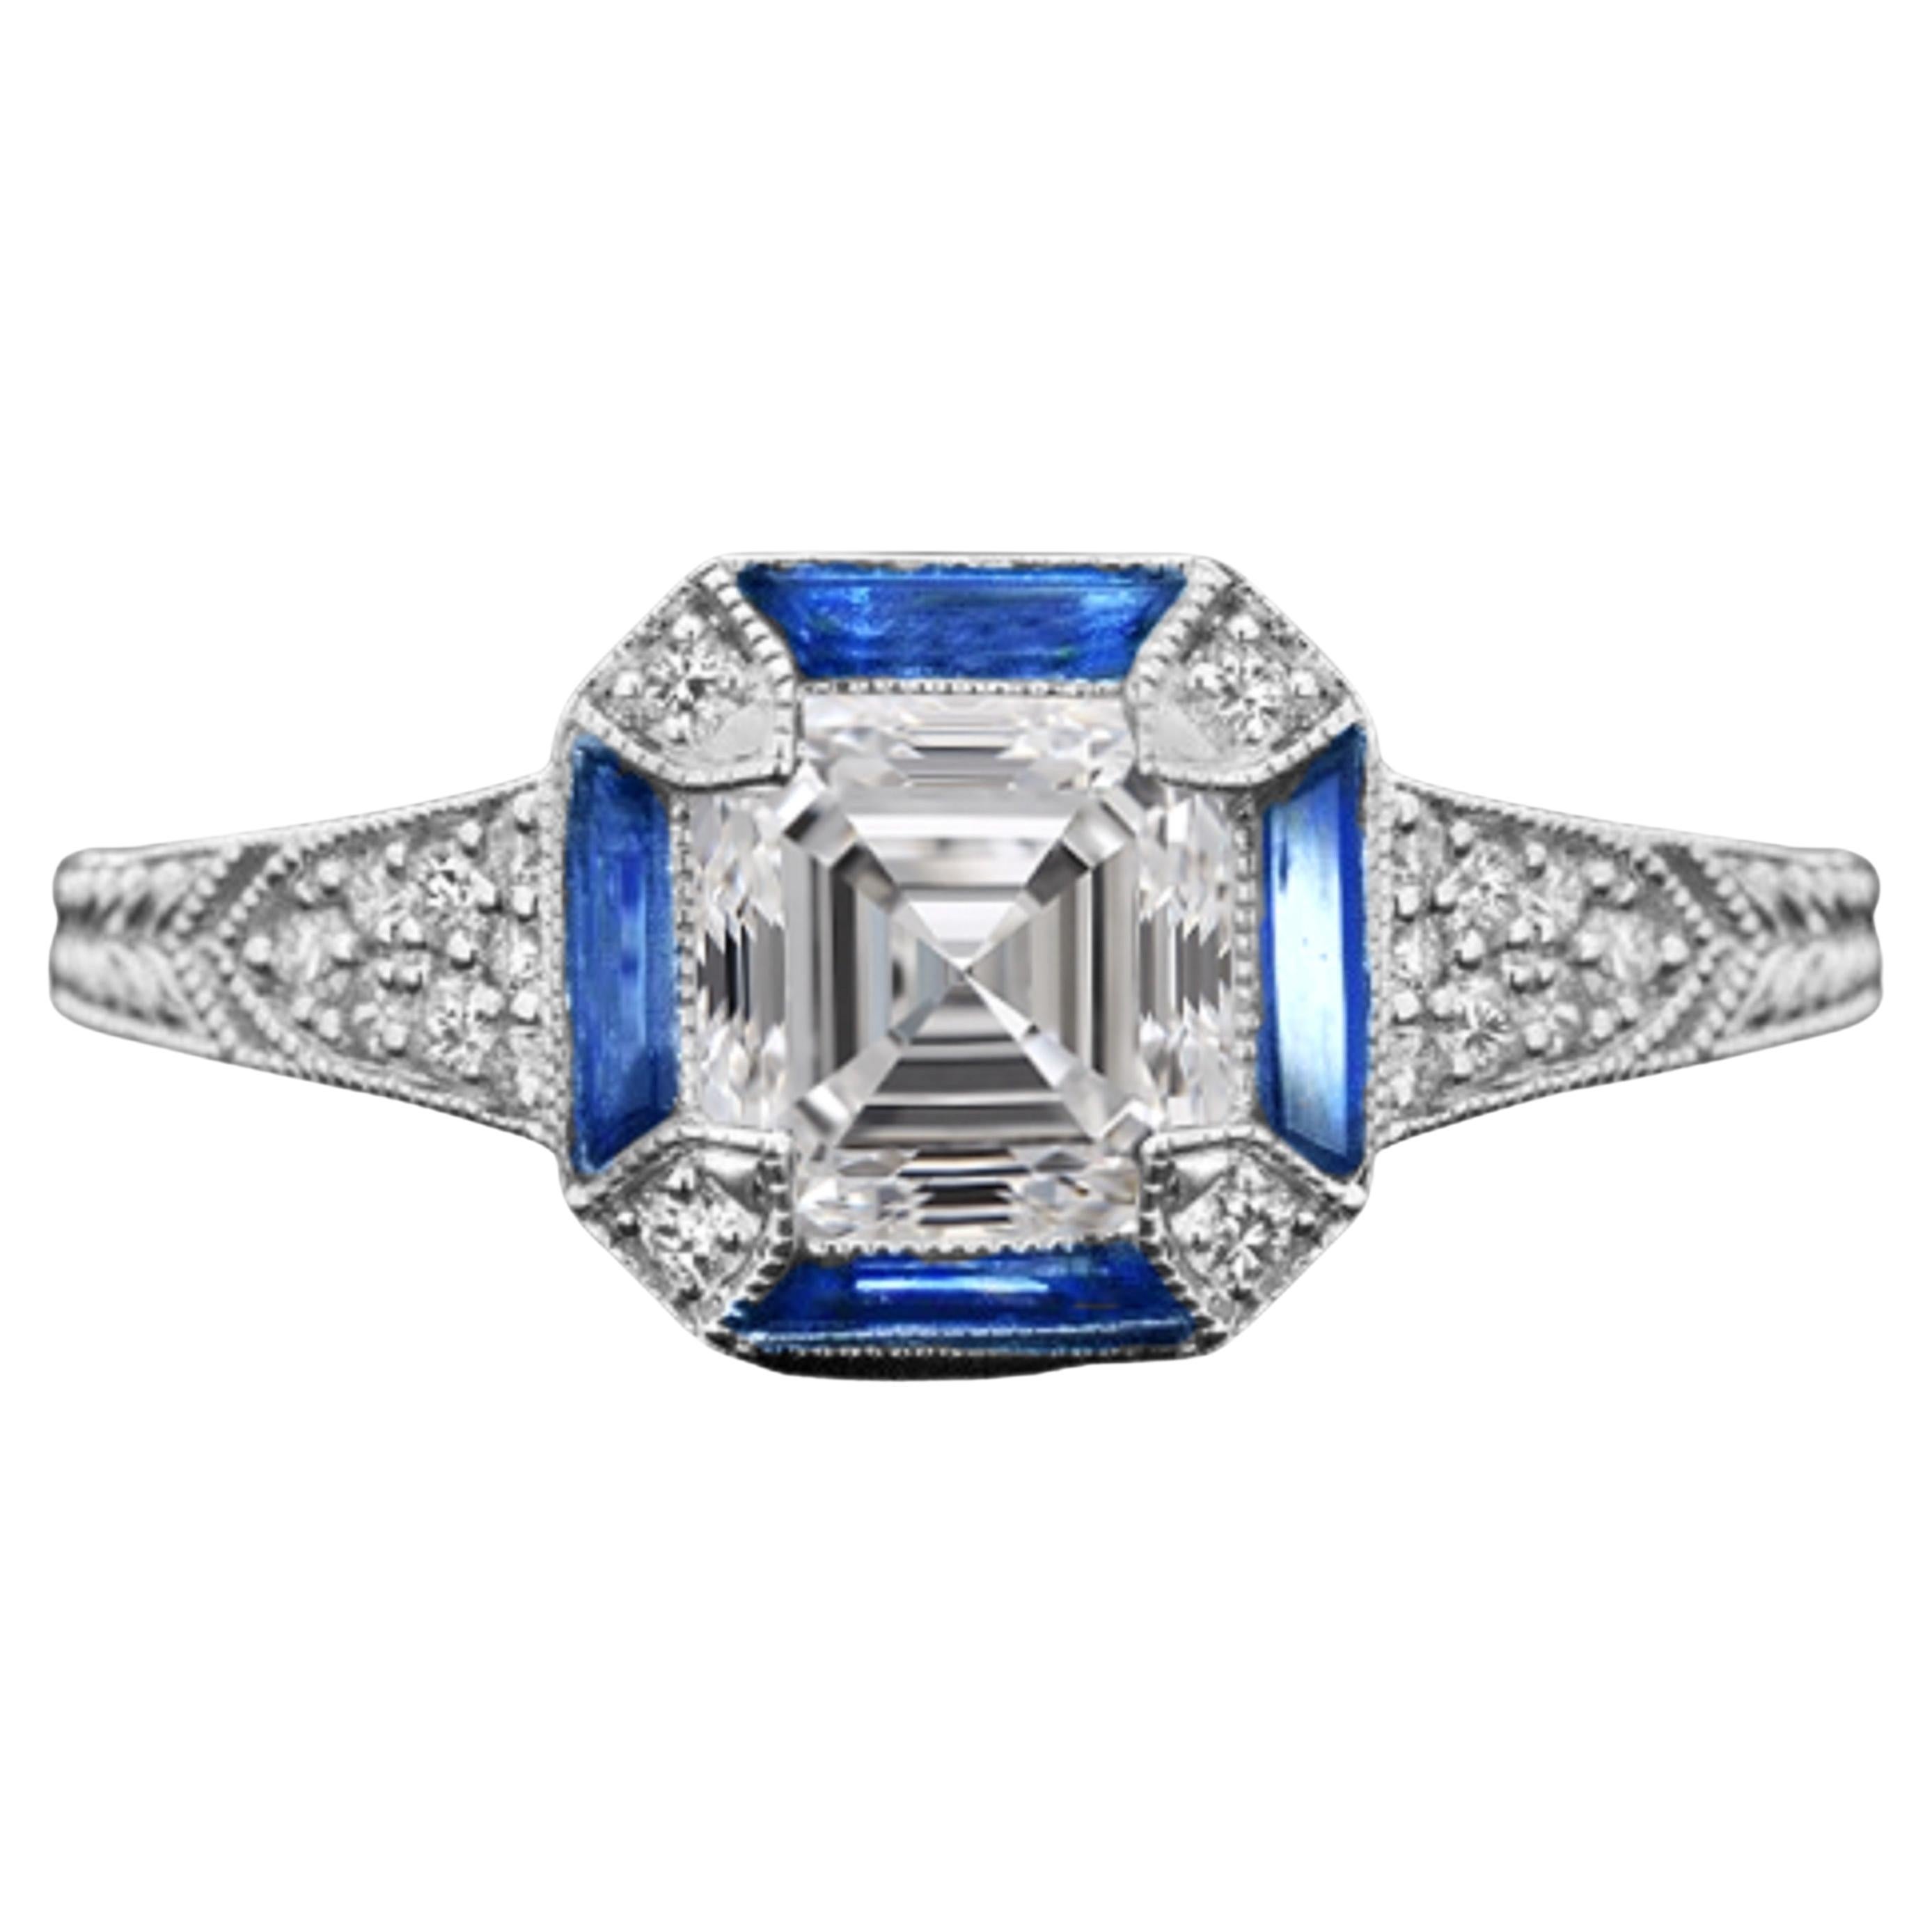 GIA Certified Royal Blue Sapphire Asscher Cut Diamond Cocktail Ring D Color VVS2